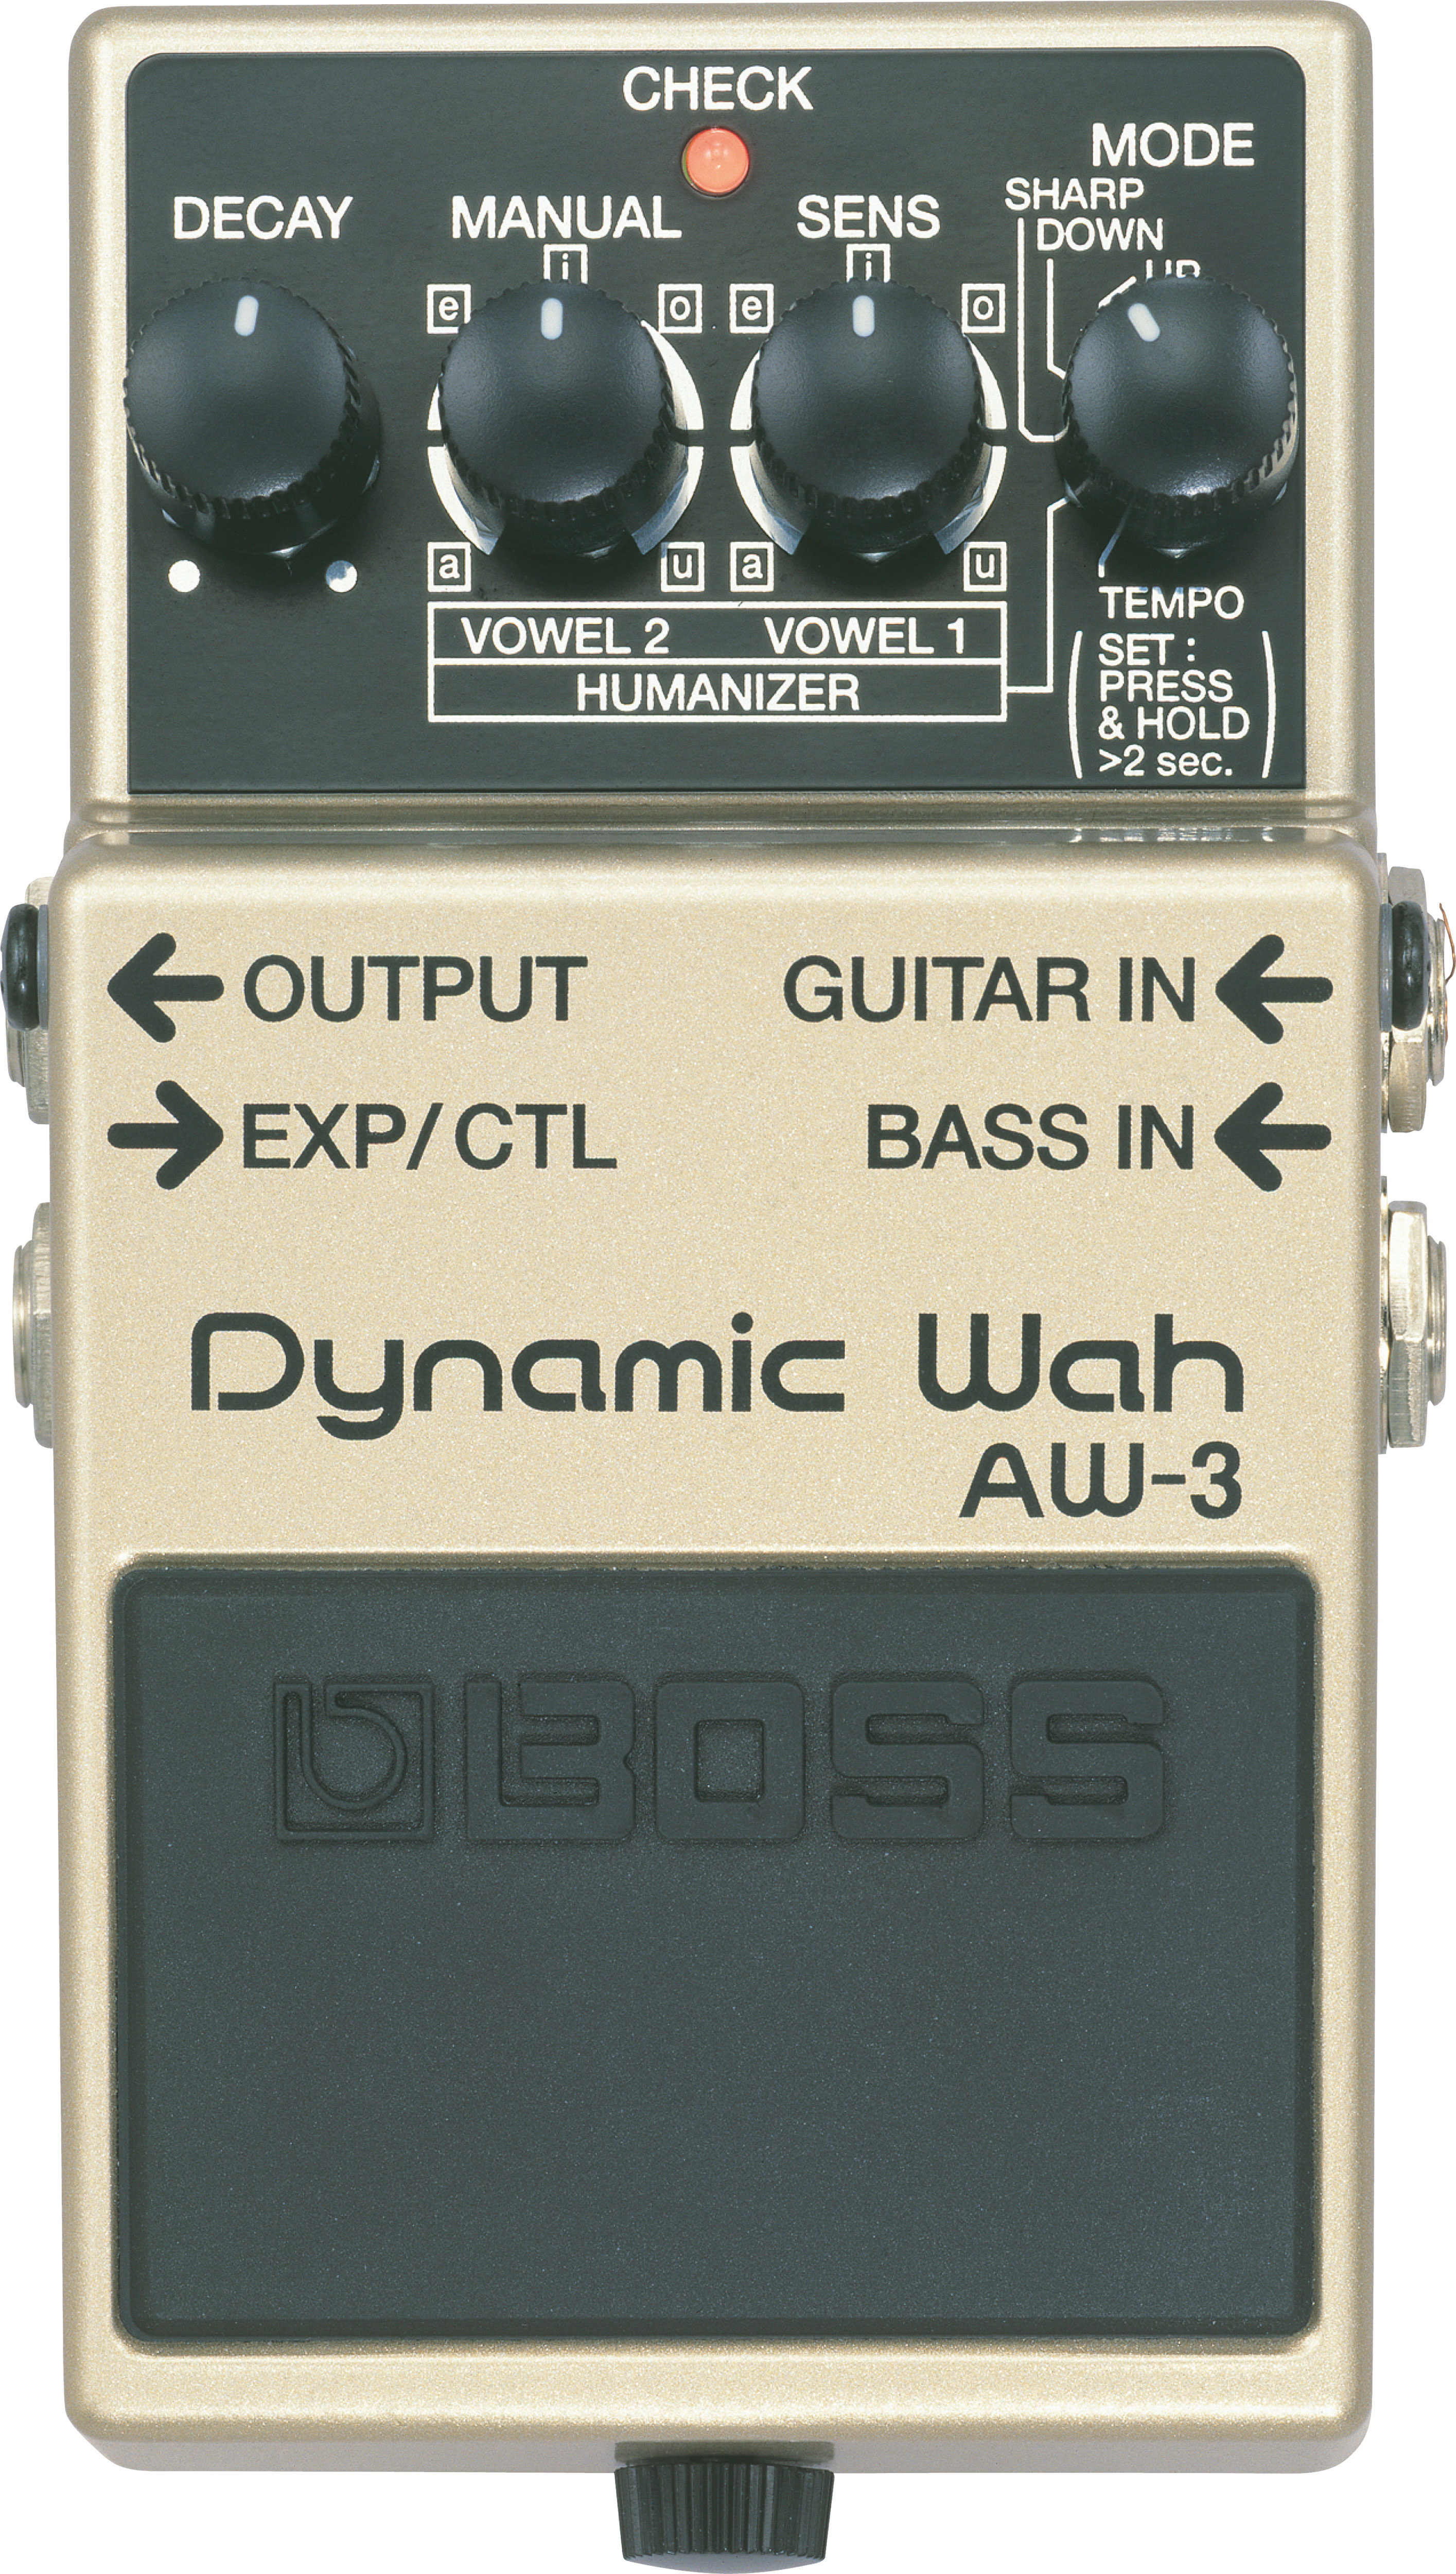 AW-3 Dynamic Wah